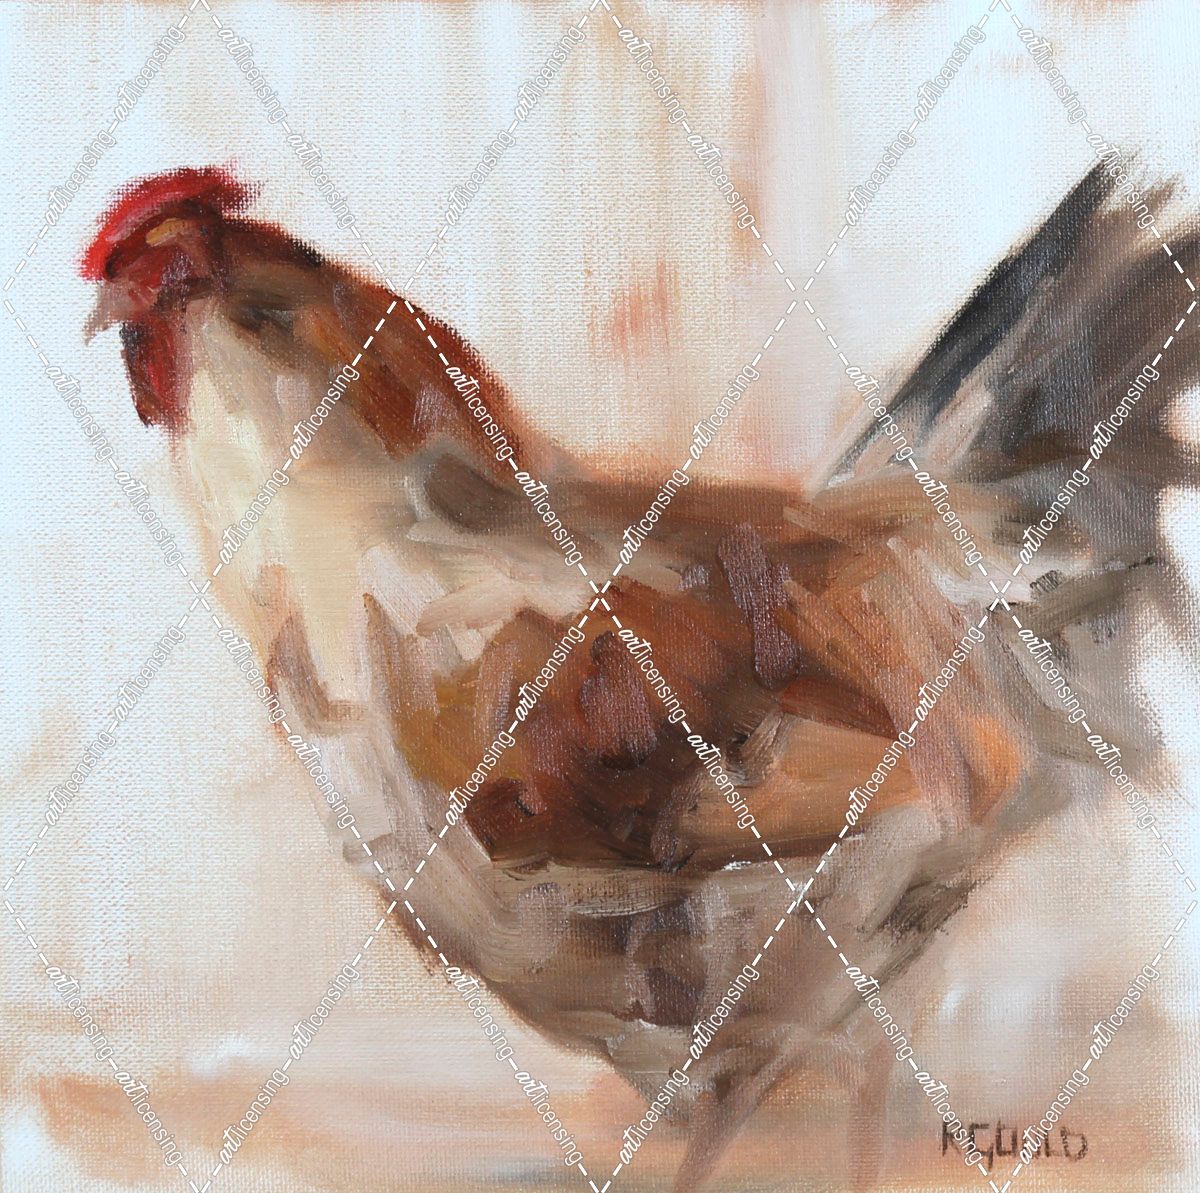 Chicken 9